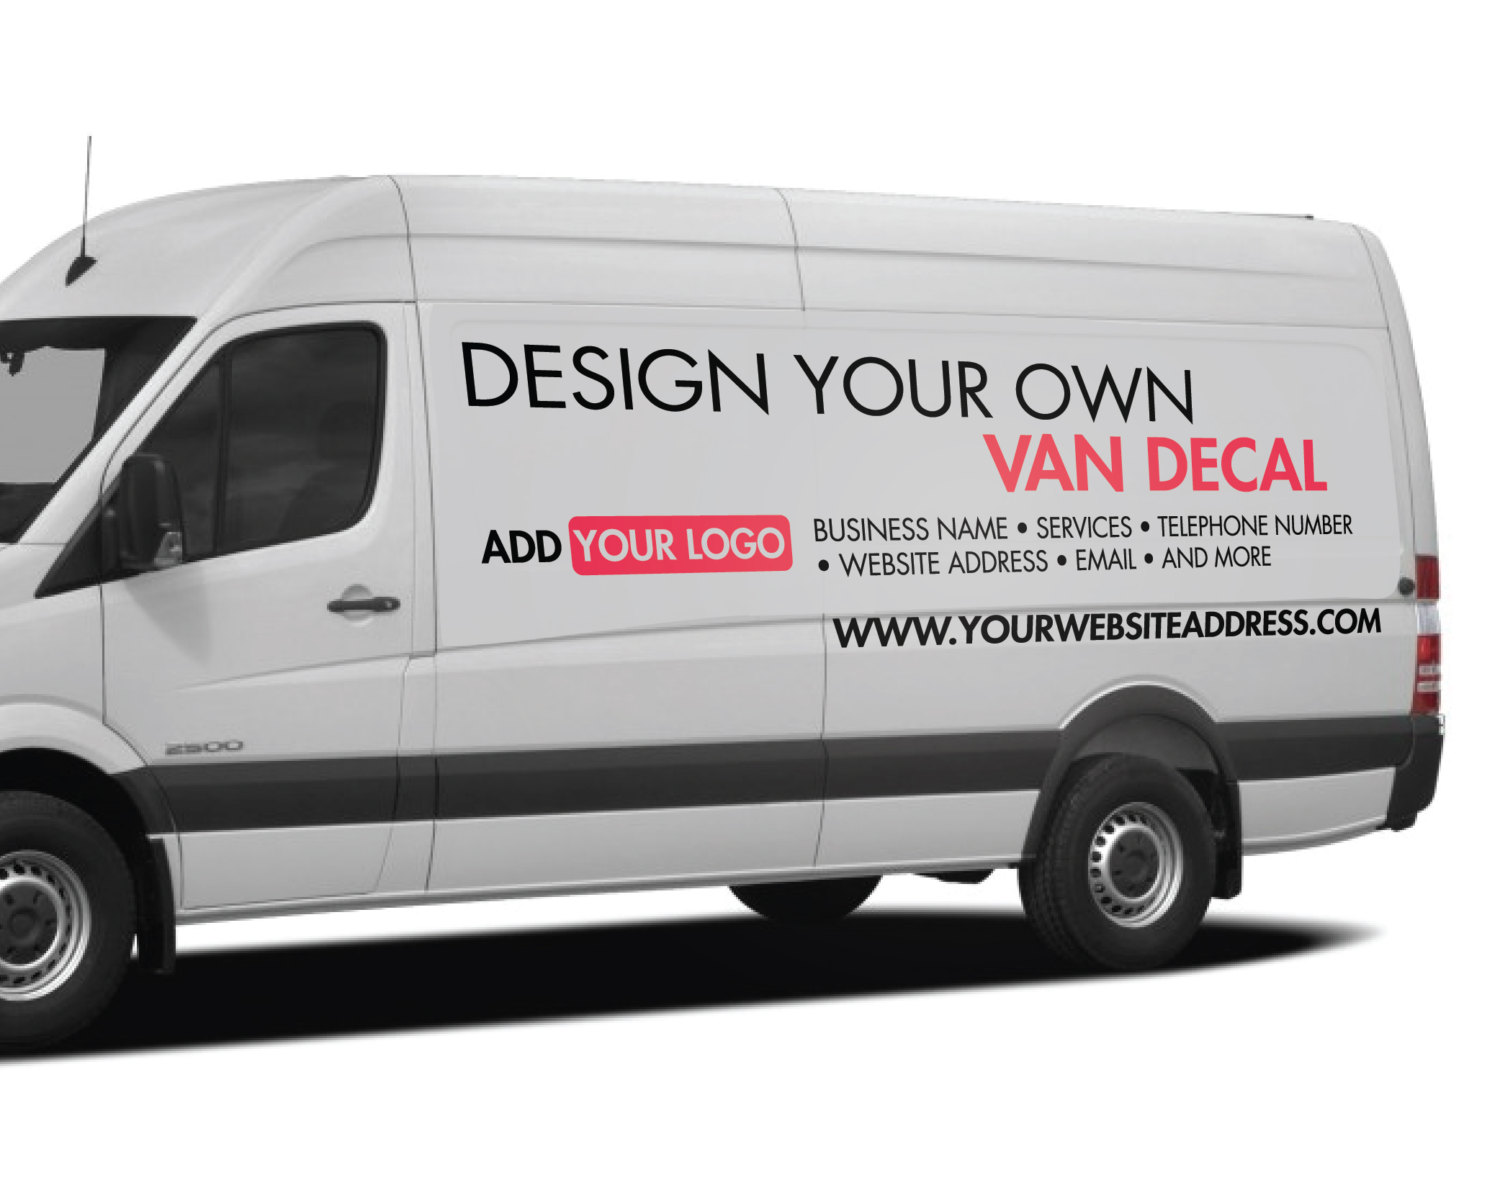 van design your own